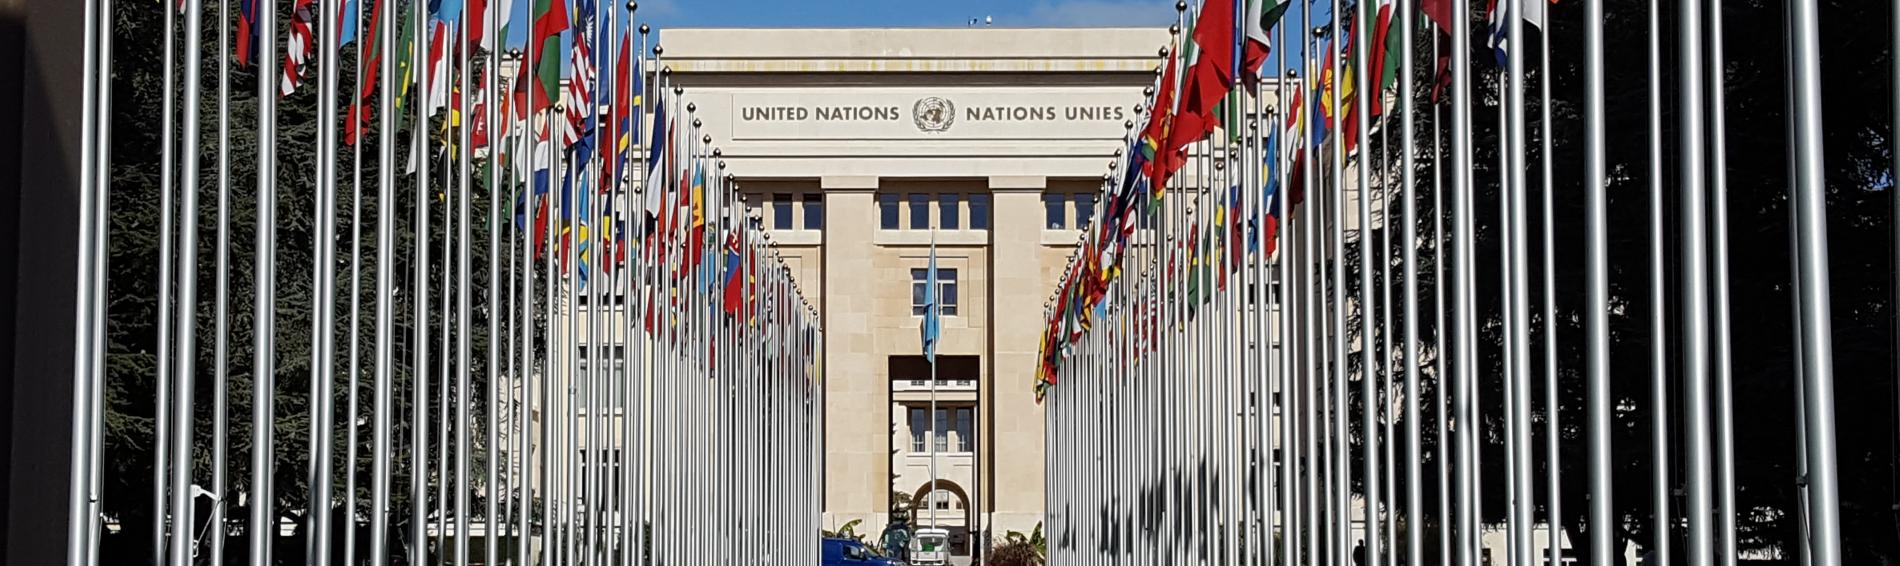 Gebäude der Vereinten Nationen in Genf